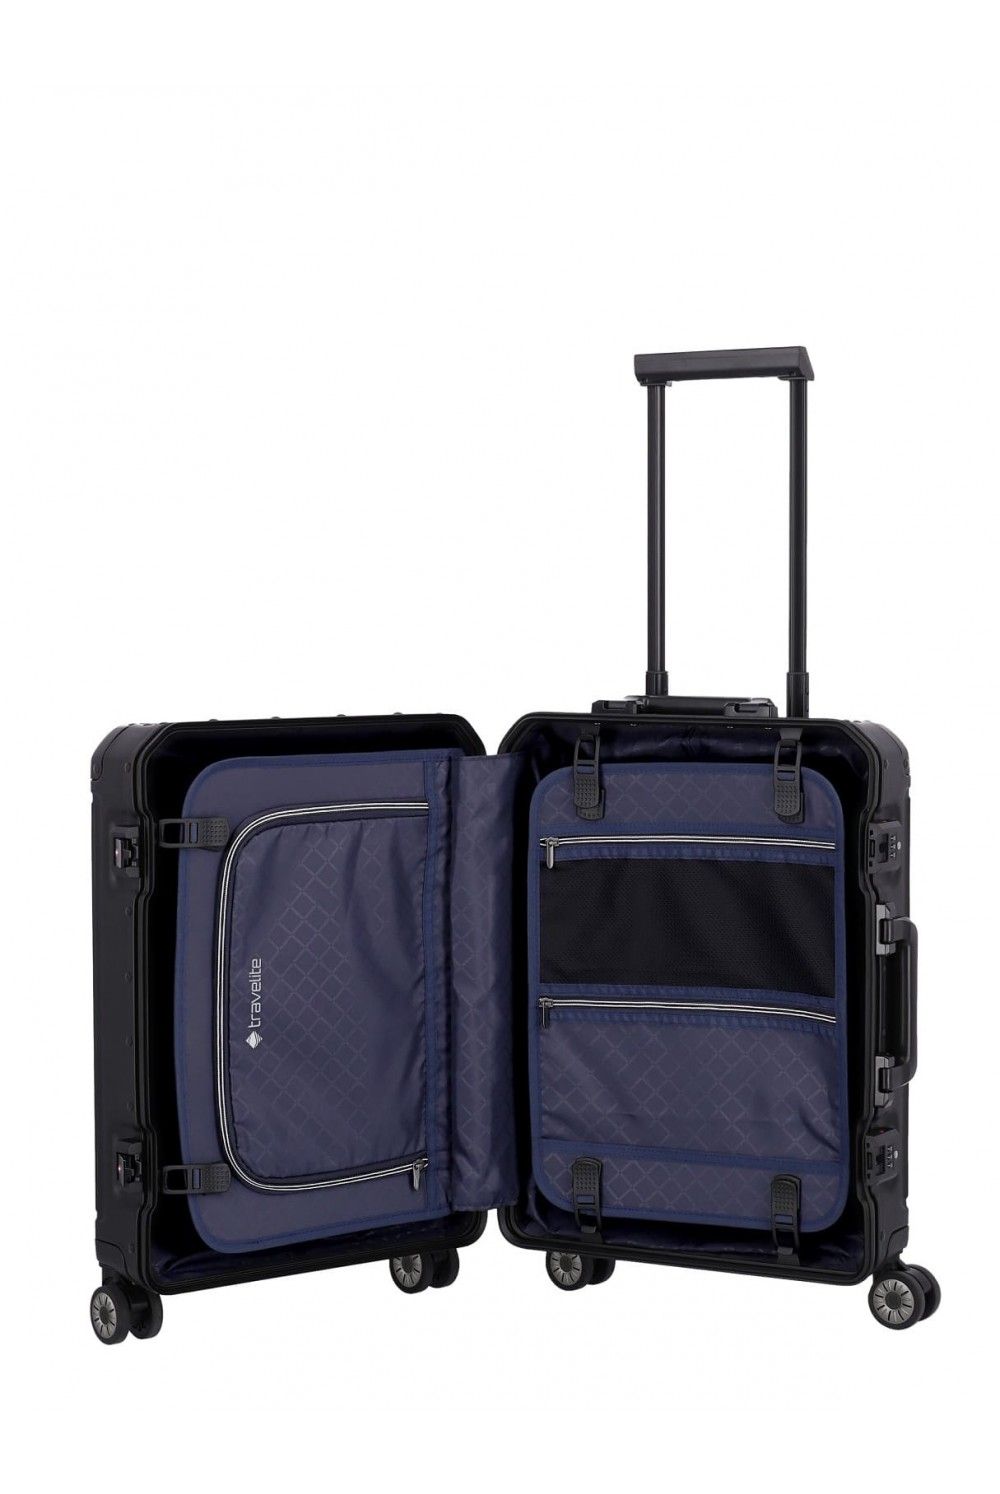 Valise aluminium Travelite NEXT 55 bagage à main 4 roues